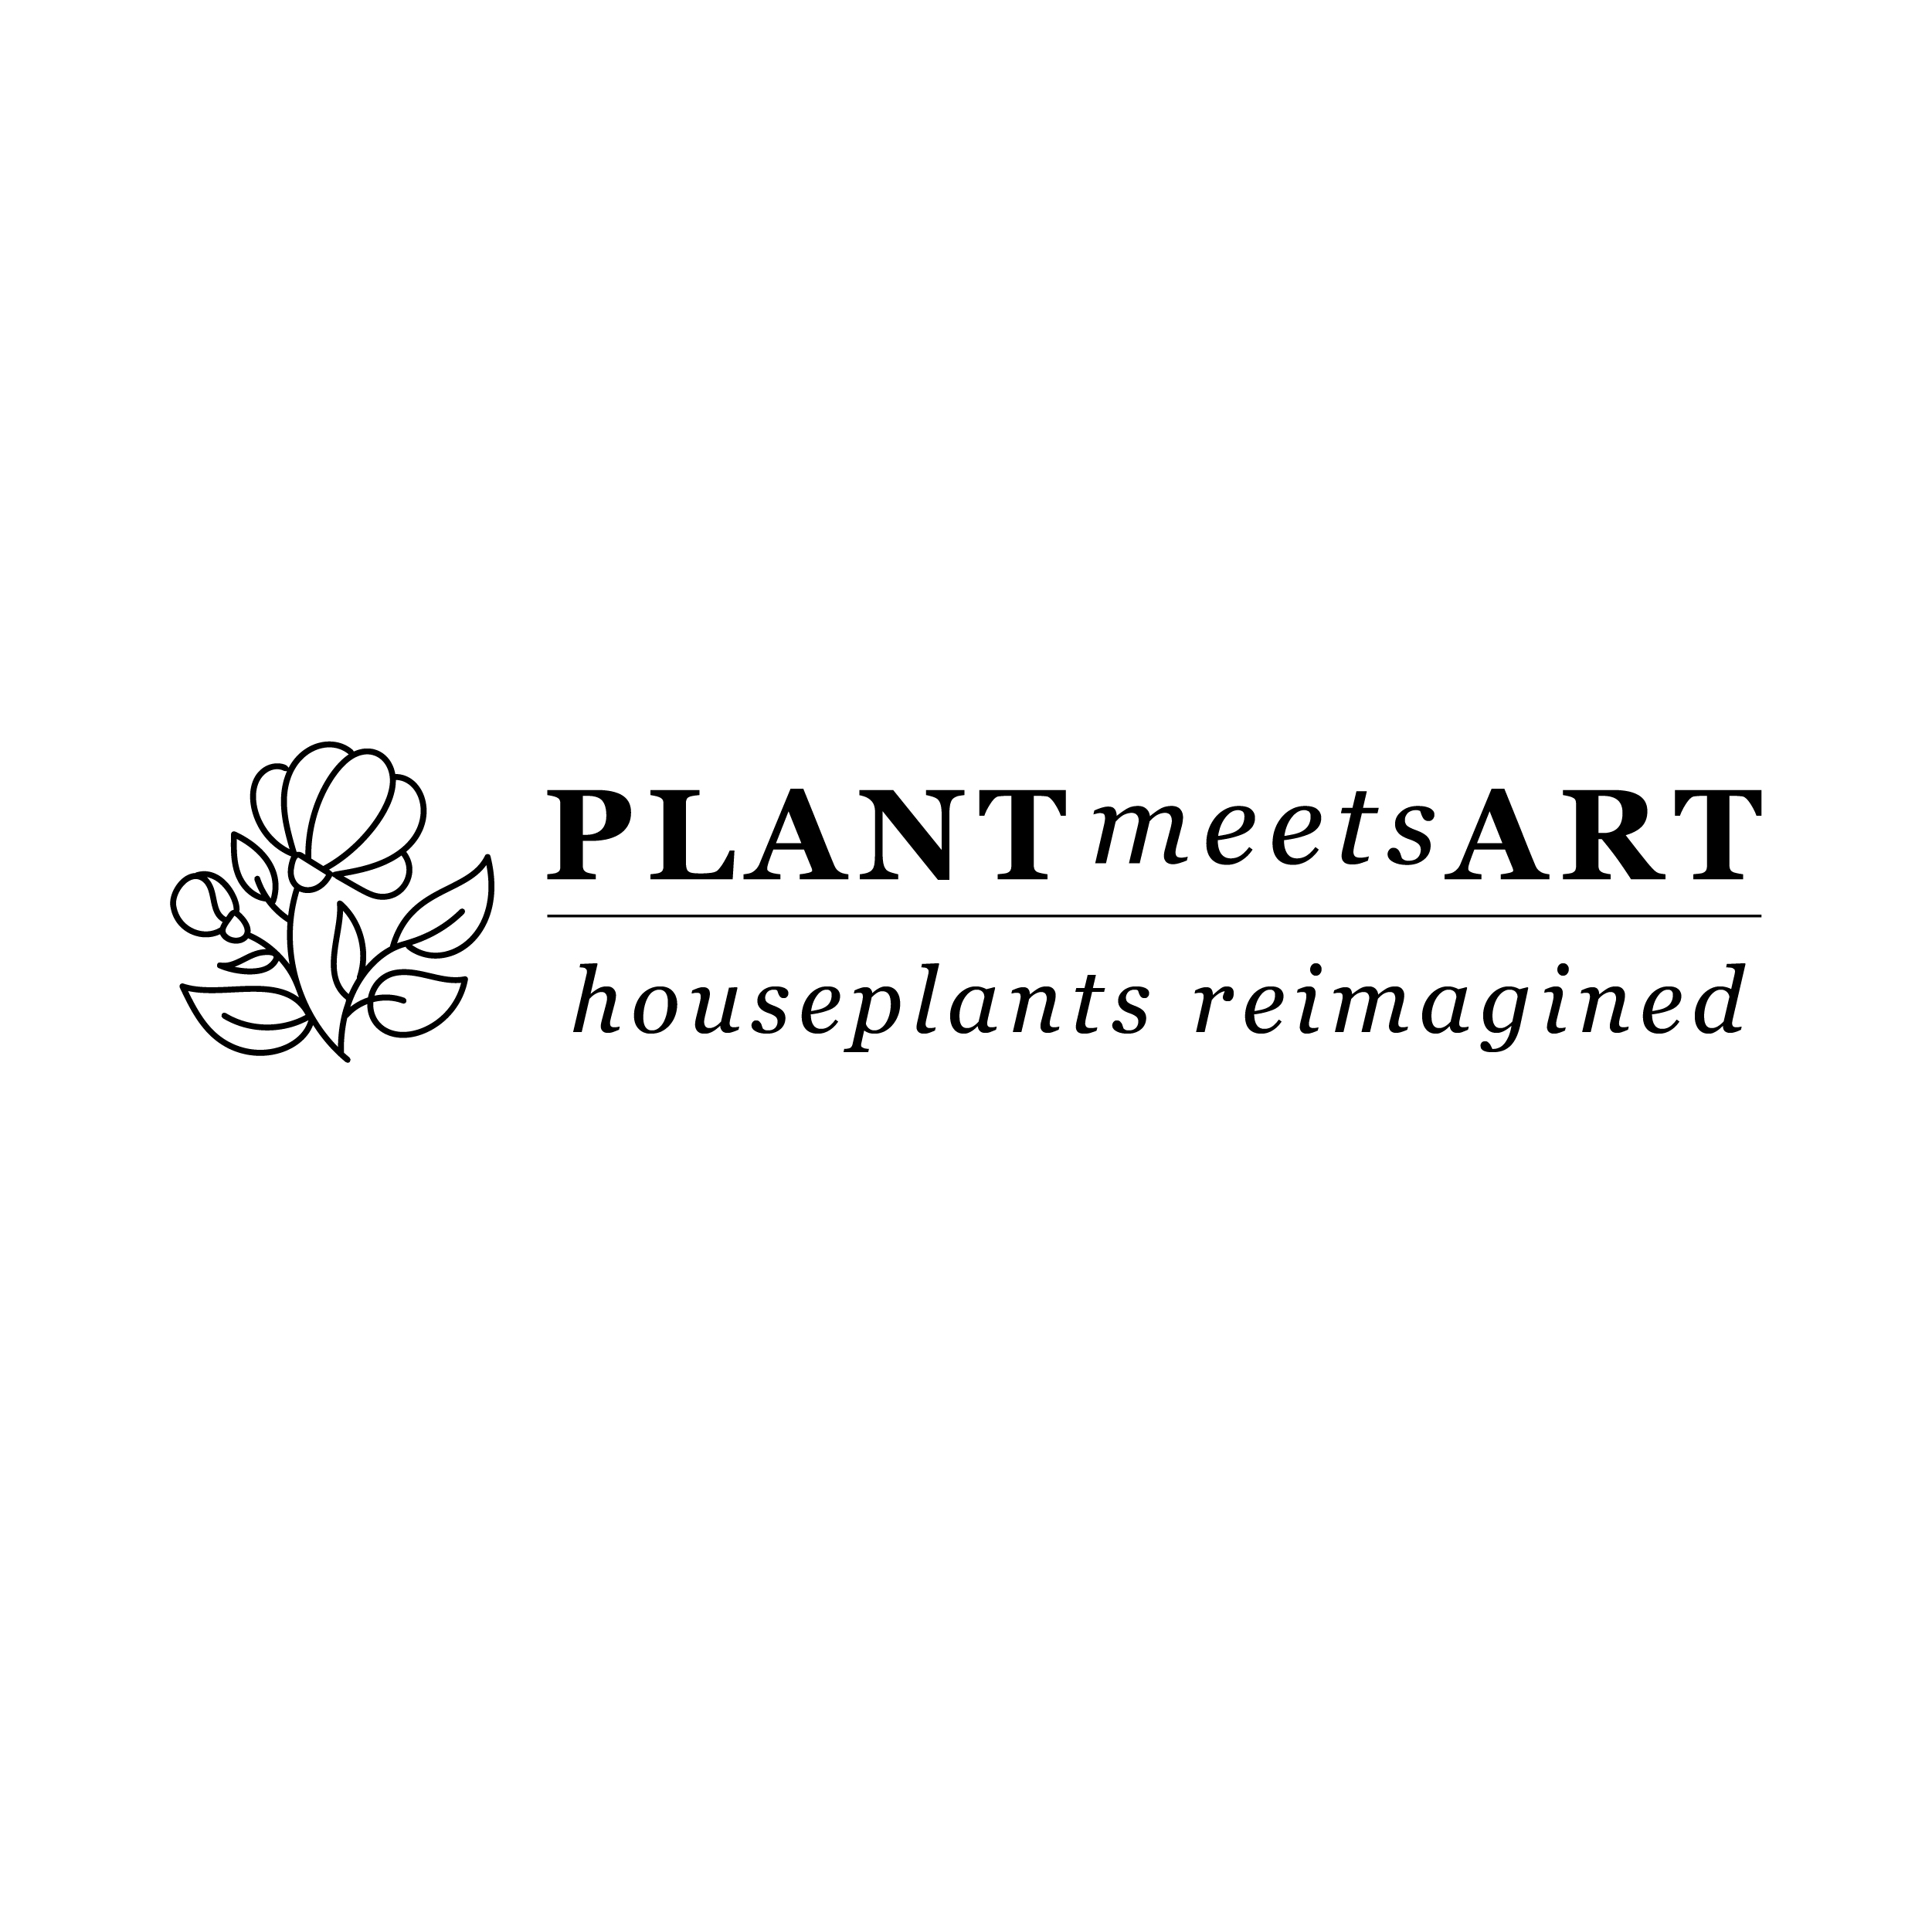 PLANT MEETS ART